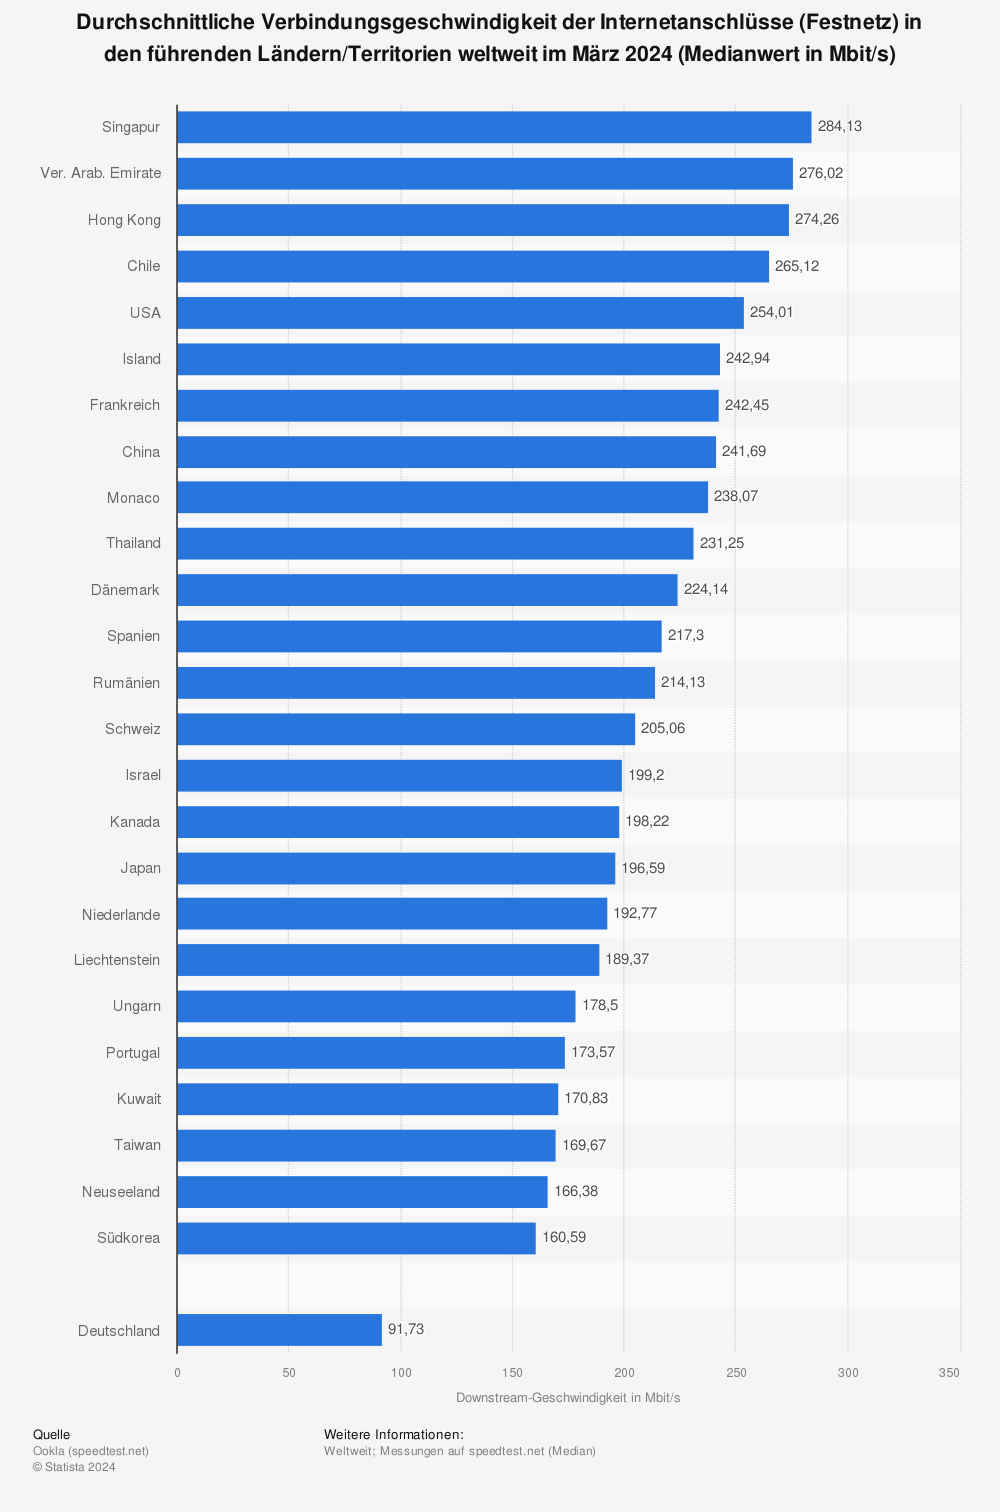 Statistik: Durchschnittliche Verbindungsgeschwindigkeit der Internetanschlüsse in den führenden Ländern weltweit im 1. Quartal 2017 (in Mbit/s) | Statista